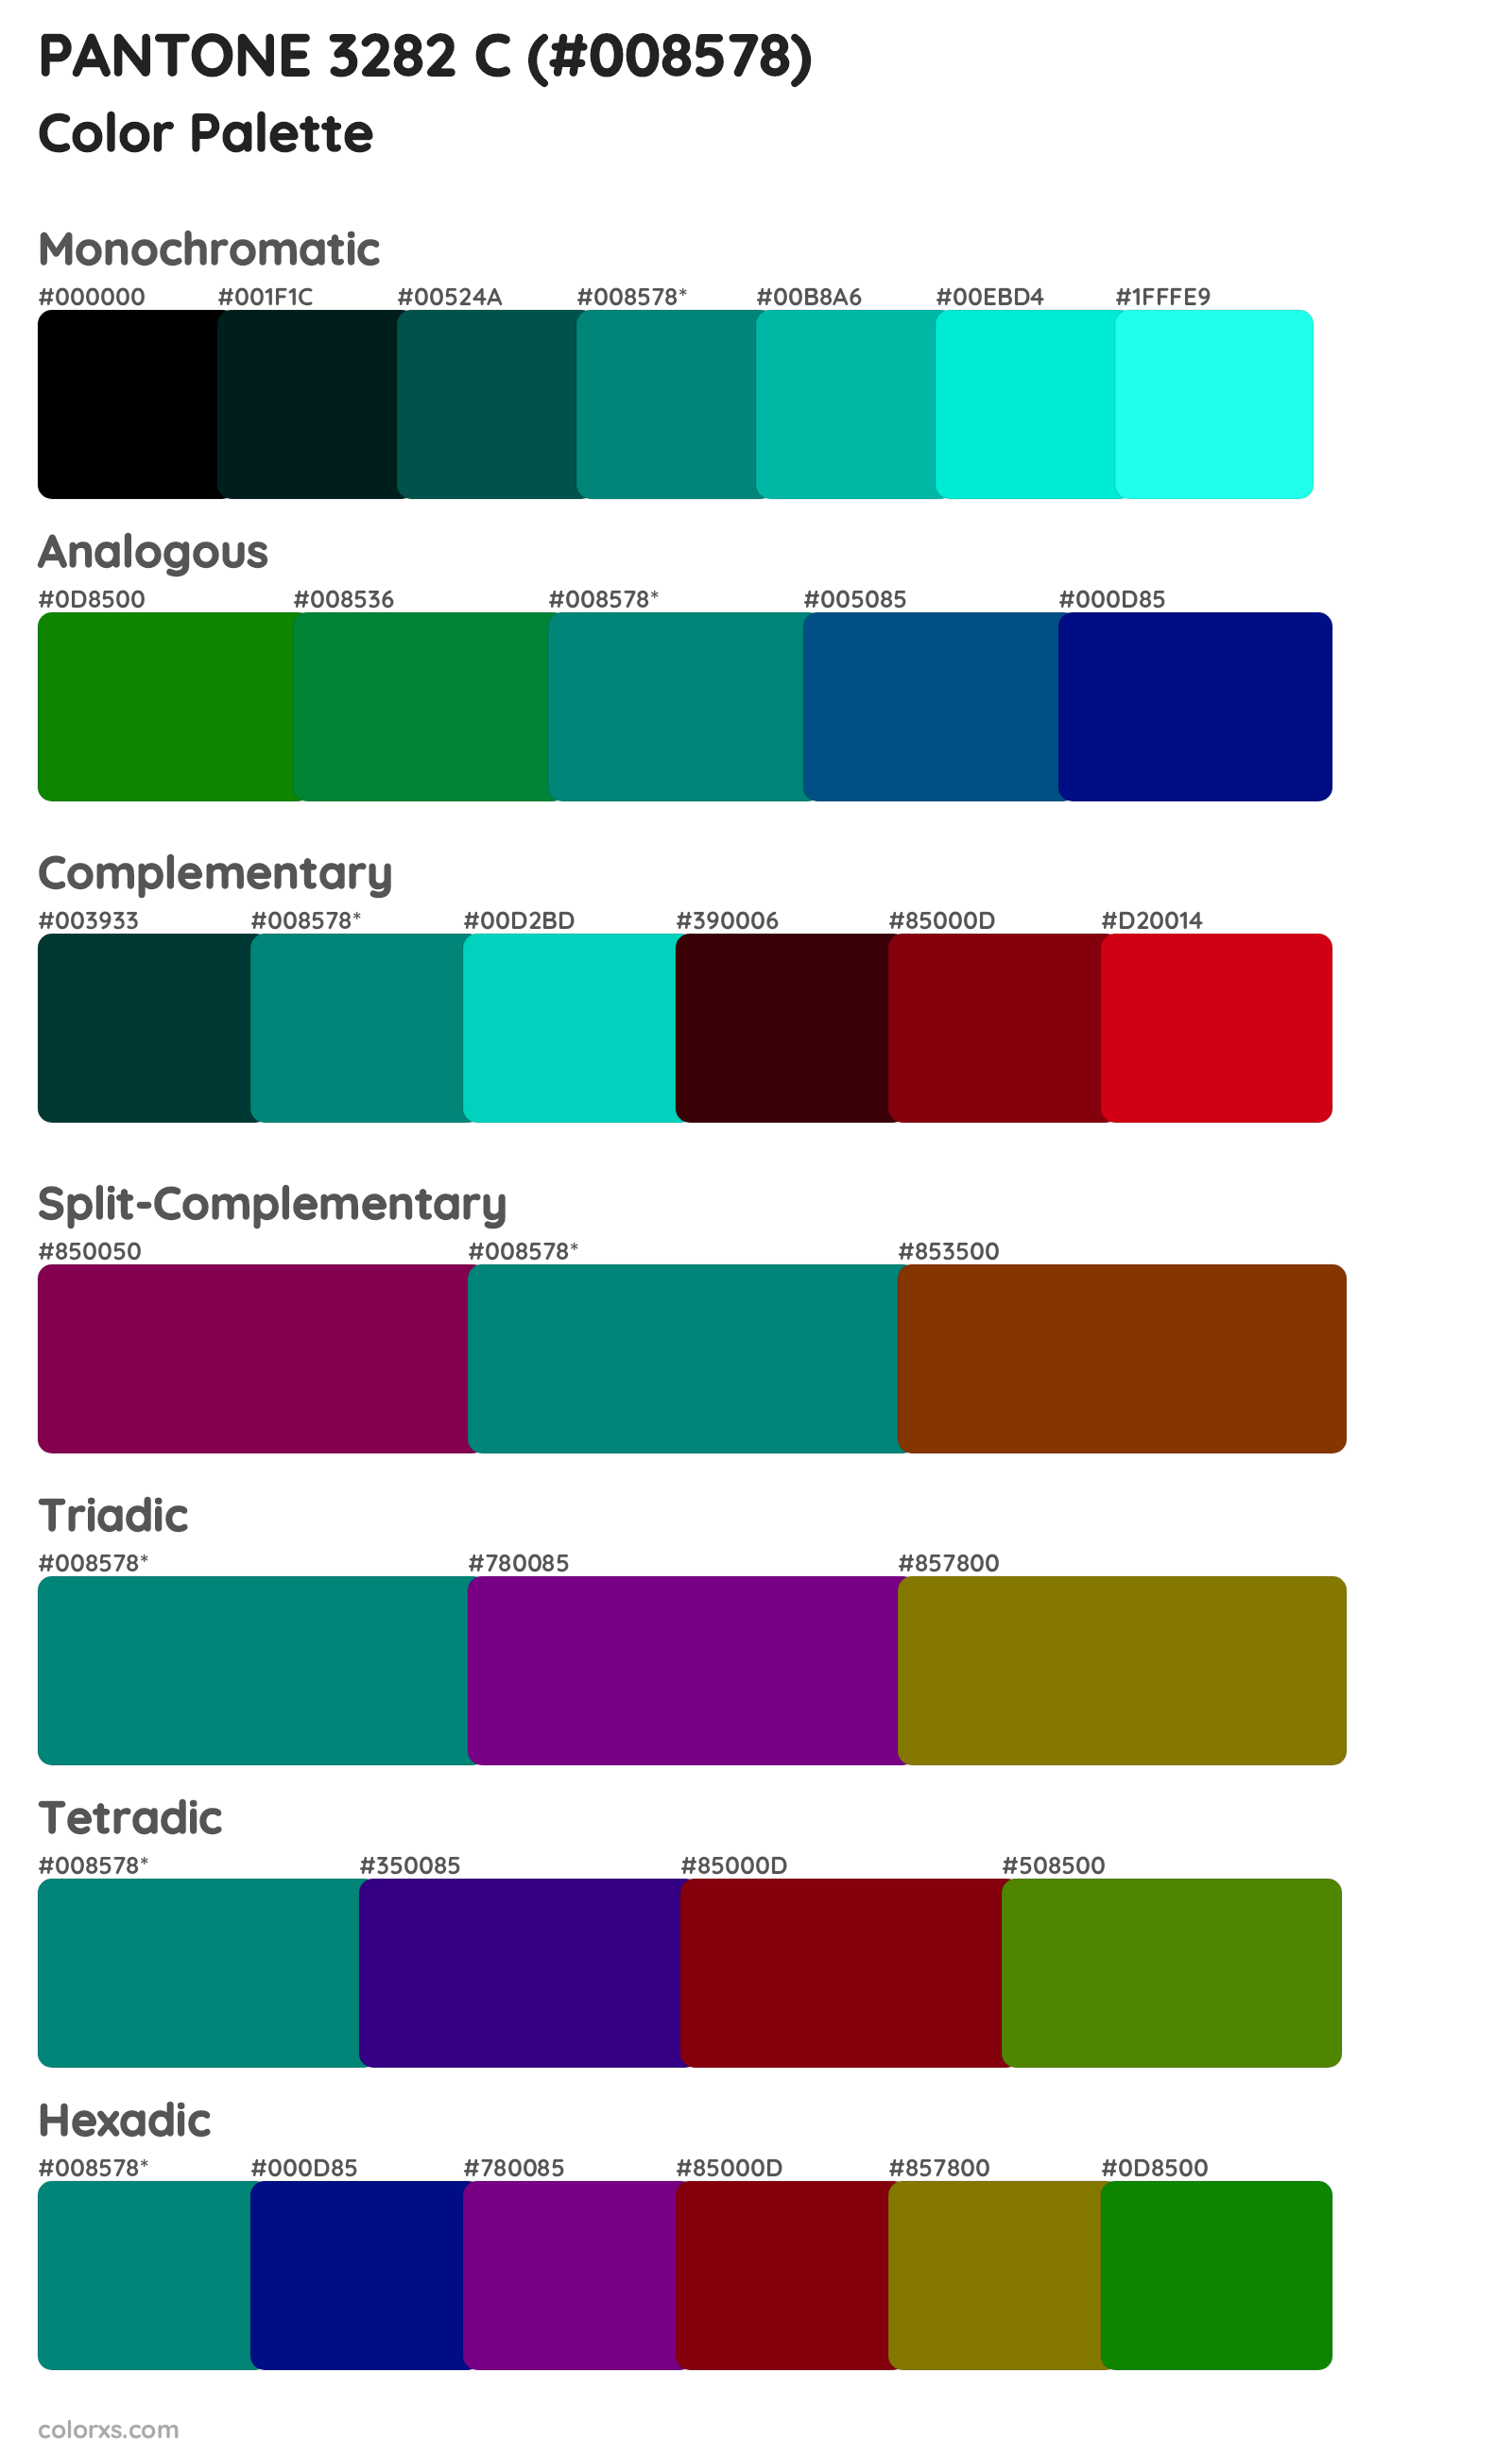 PANTONE 3282 C Color Scheme Palettes